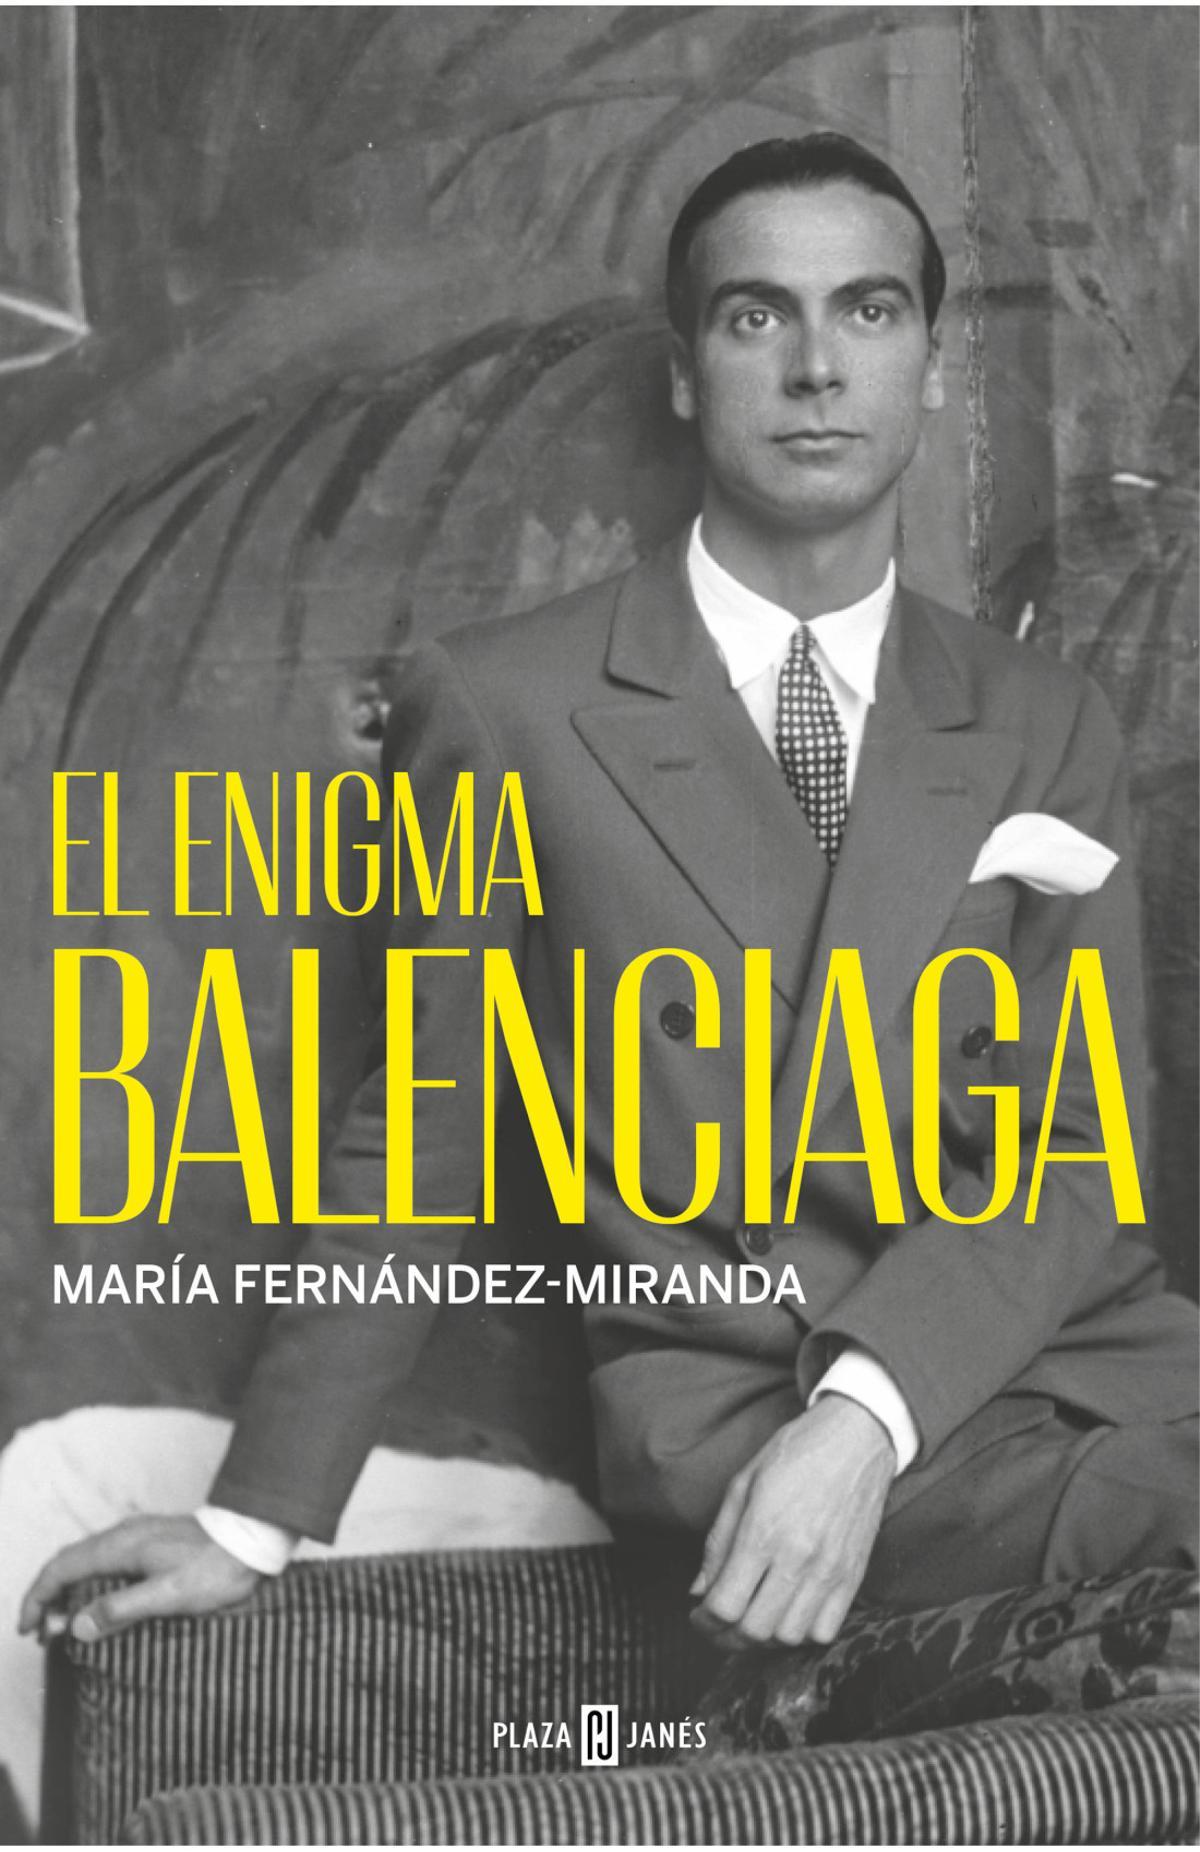 Portada de ‘El enigma Balenciaga’, de María Fernández-Miranda.